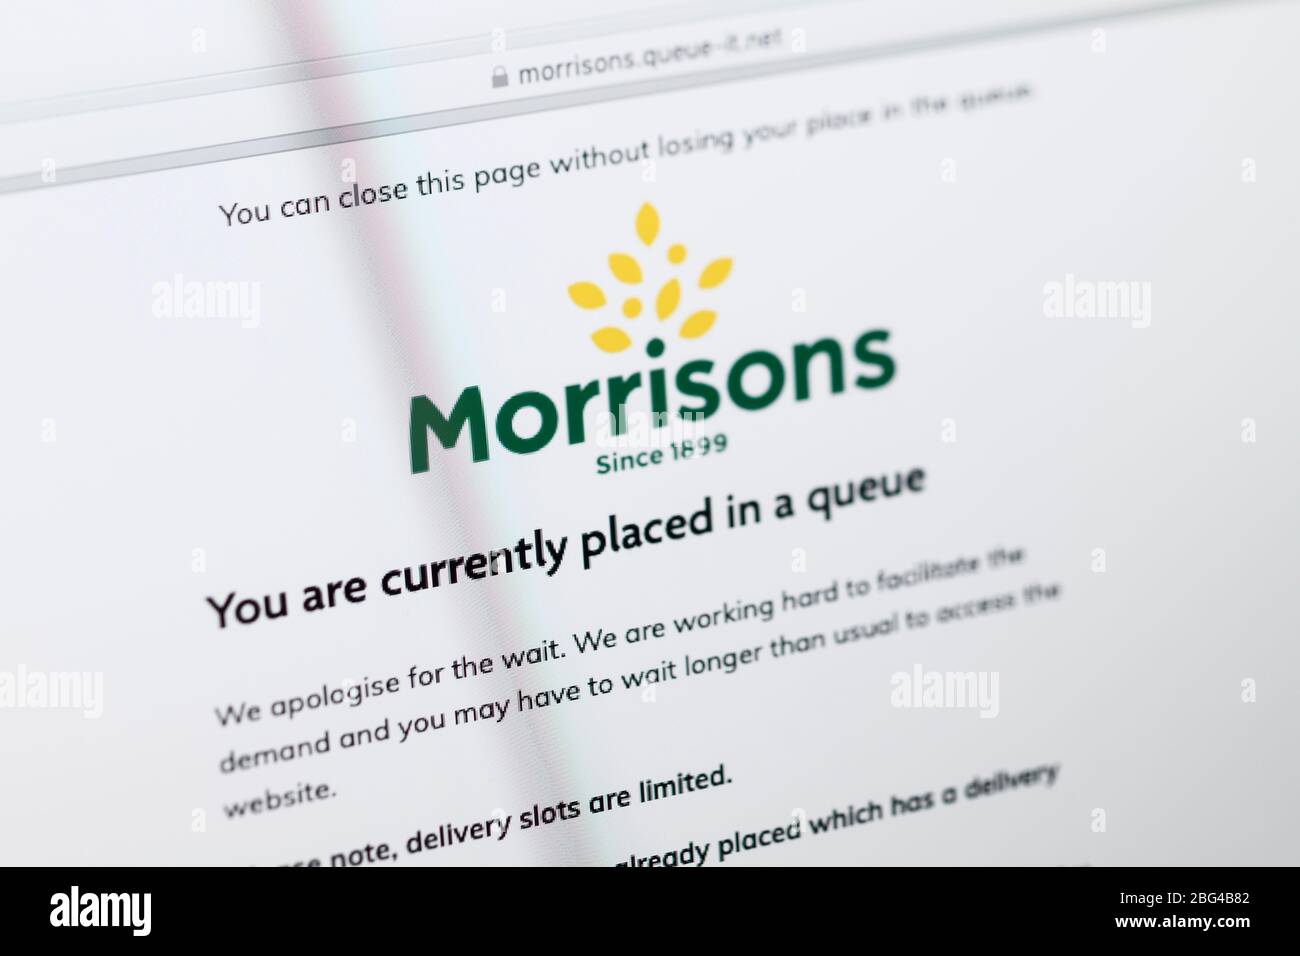 Gros plan sur la page d'accueil de supermarché Morrisons montrant qu'un système de file d'attente est en place pour les commandes en ligne Banque D'Images